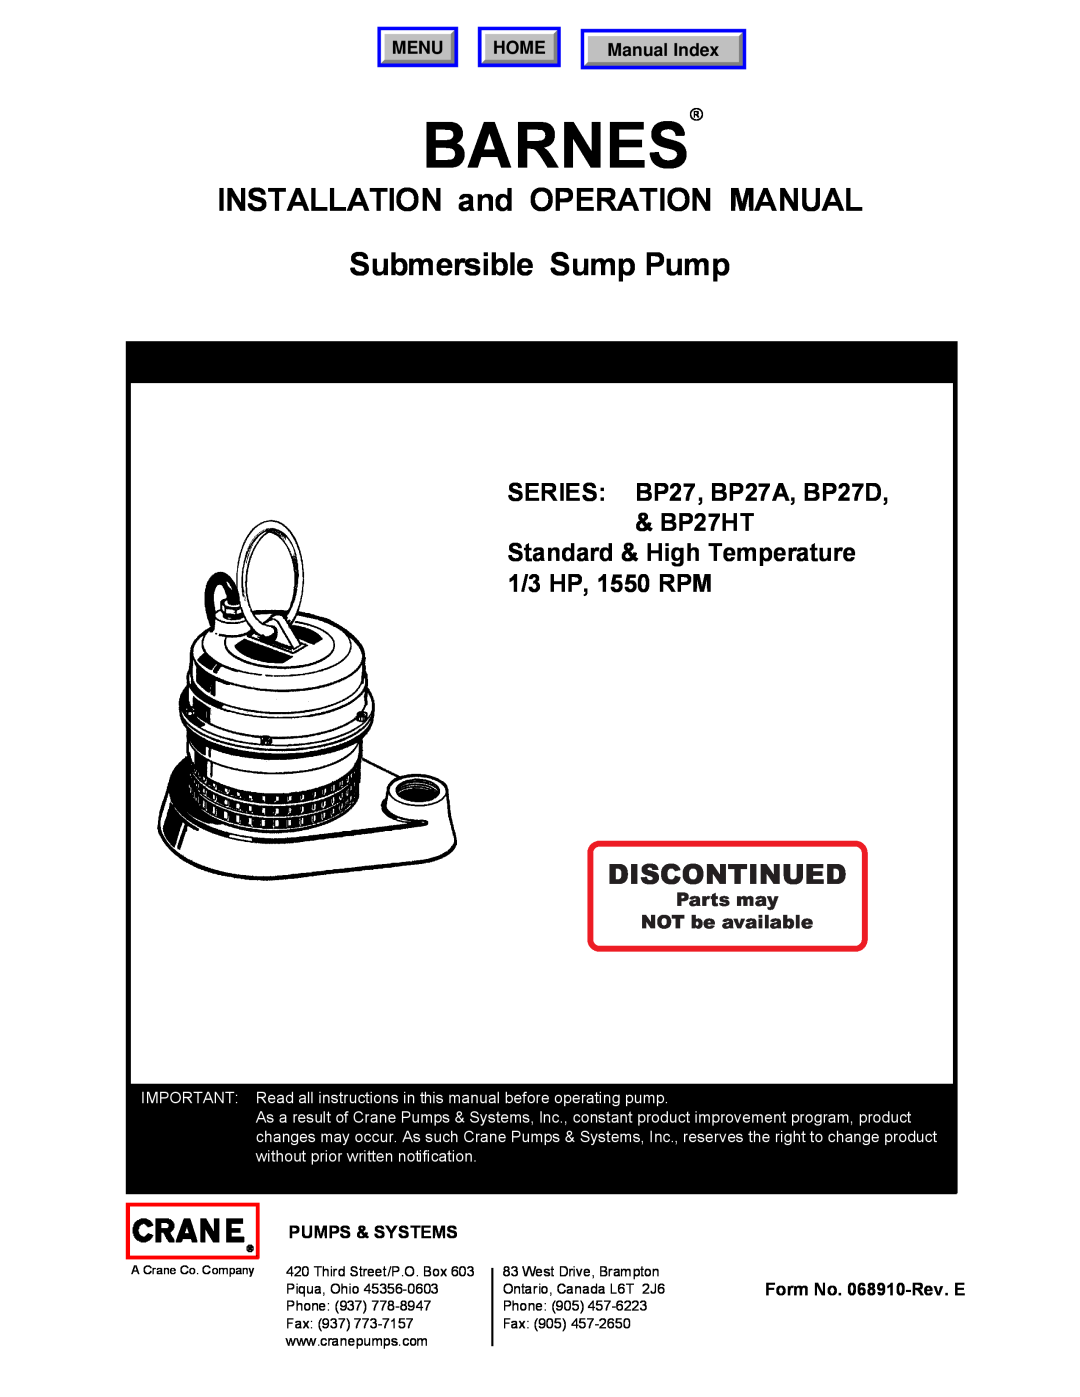 Barnes & Noble BP27HT operation manual Barnes, INSTALLATION and OPERATION MANUAL Submersible Sump Pump, Discontinued, Menu 